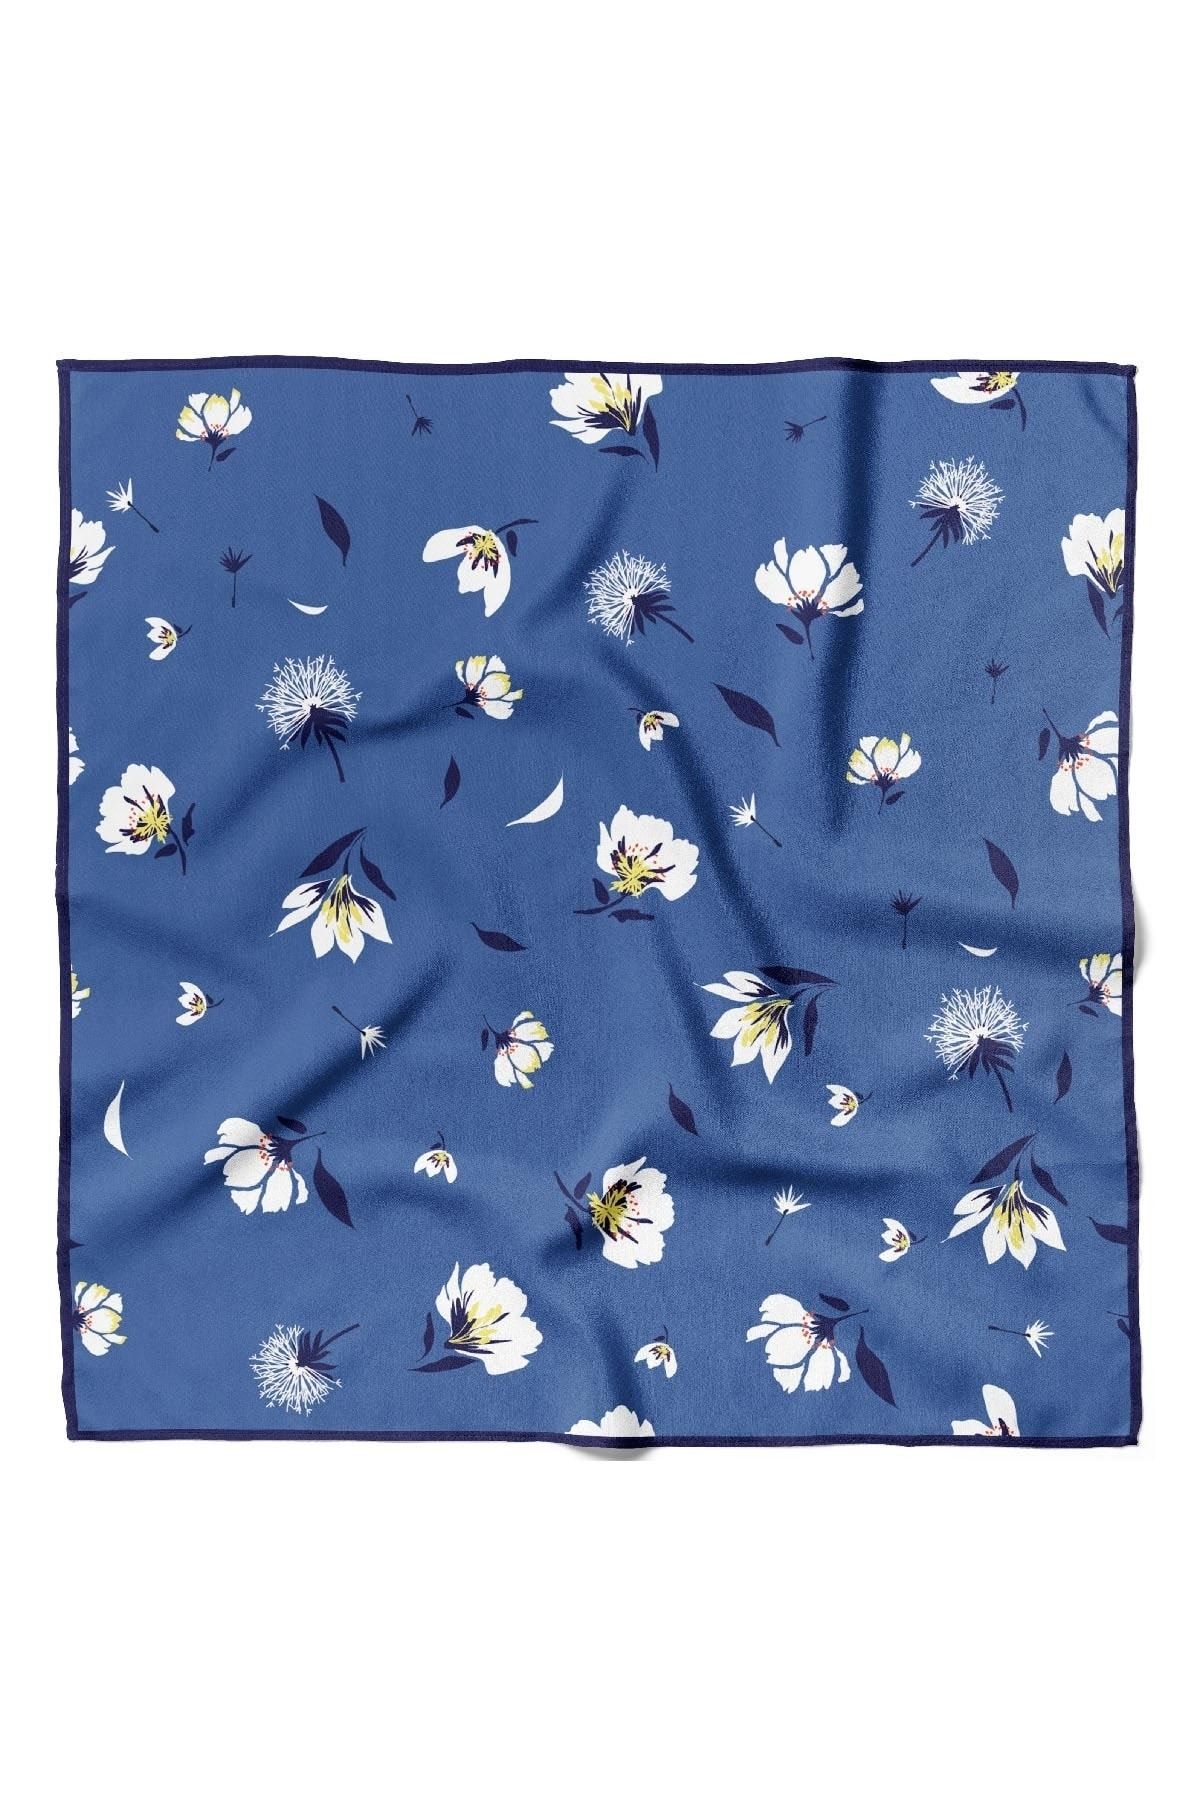 Modabutik Kadın Çiçek Desenli Bandana 50x50 Koyu Mavi Dg0158-22 Snz